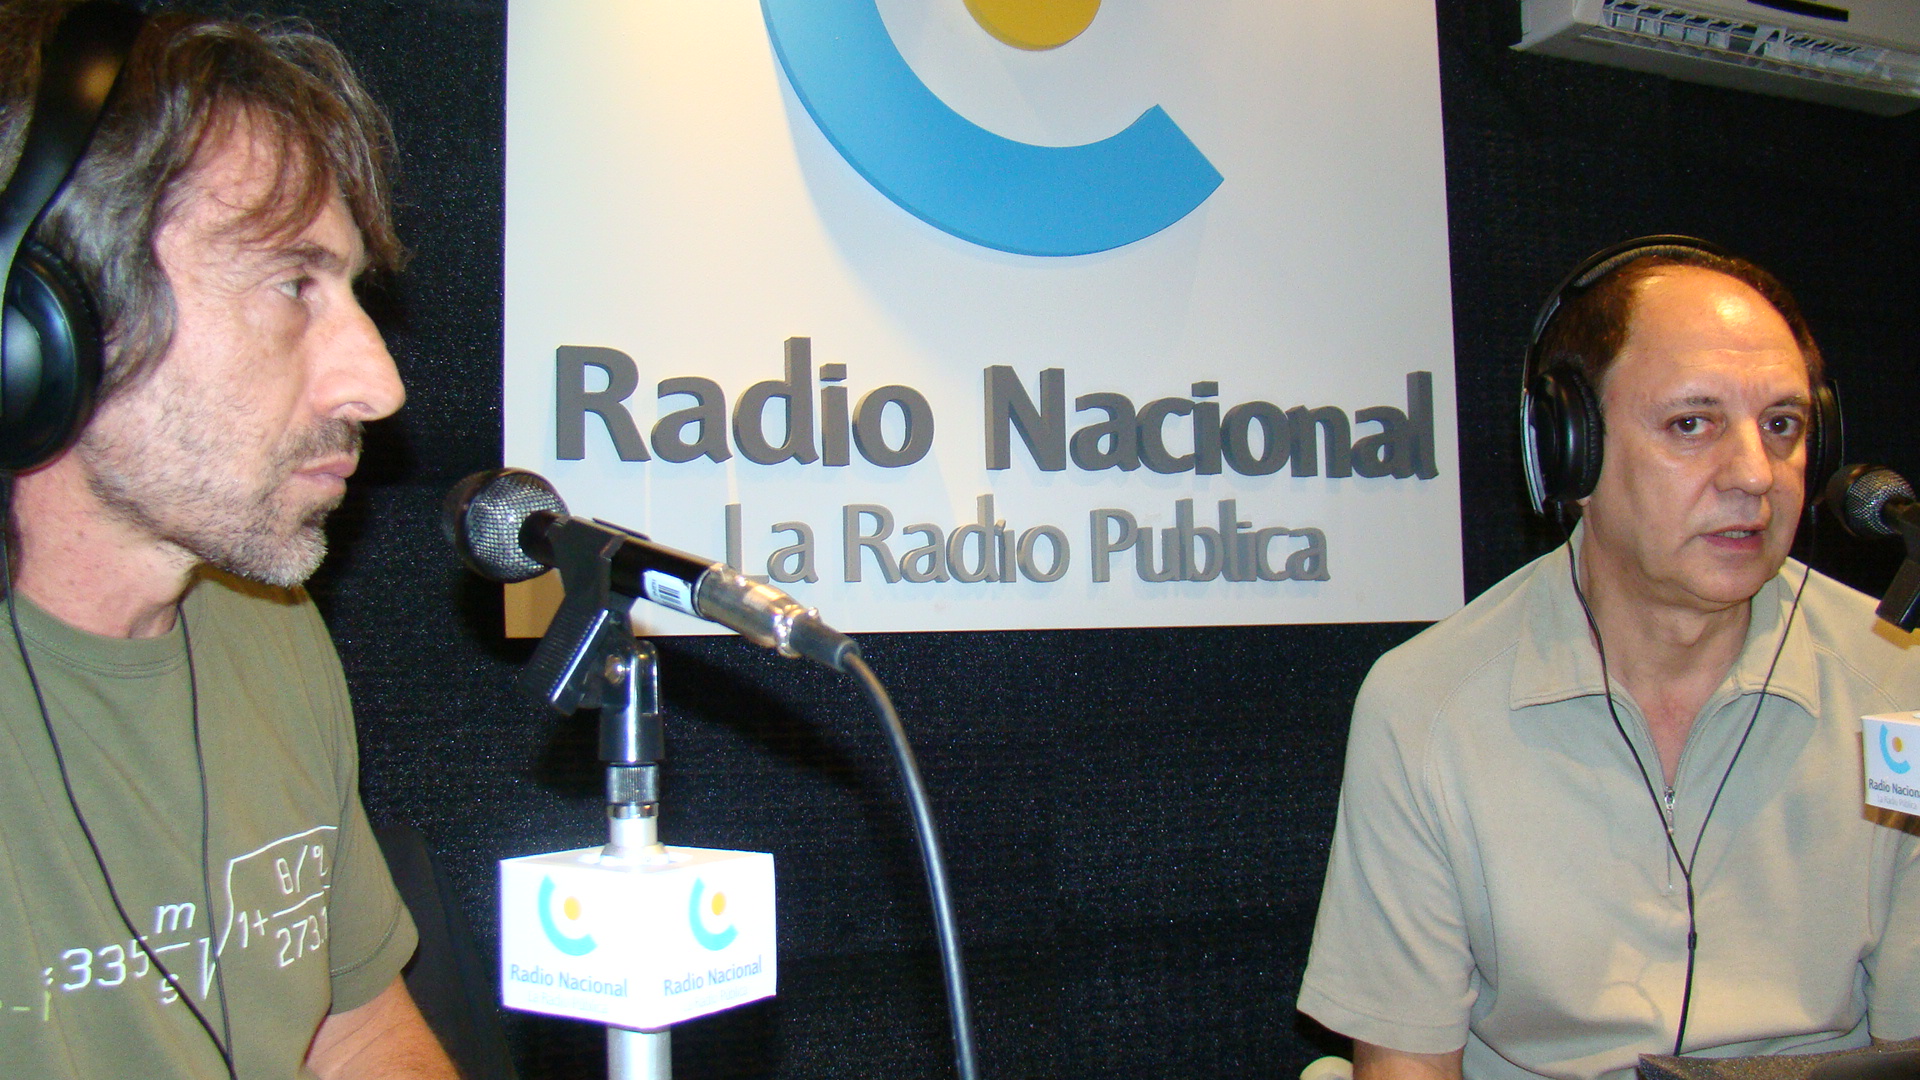 Tribulaciones Radio no vuelve a Nacional Rock 93.7 FM